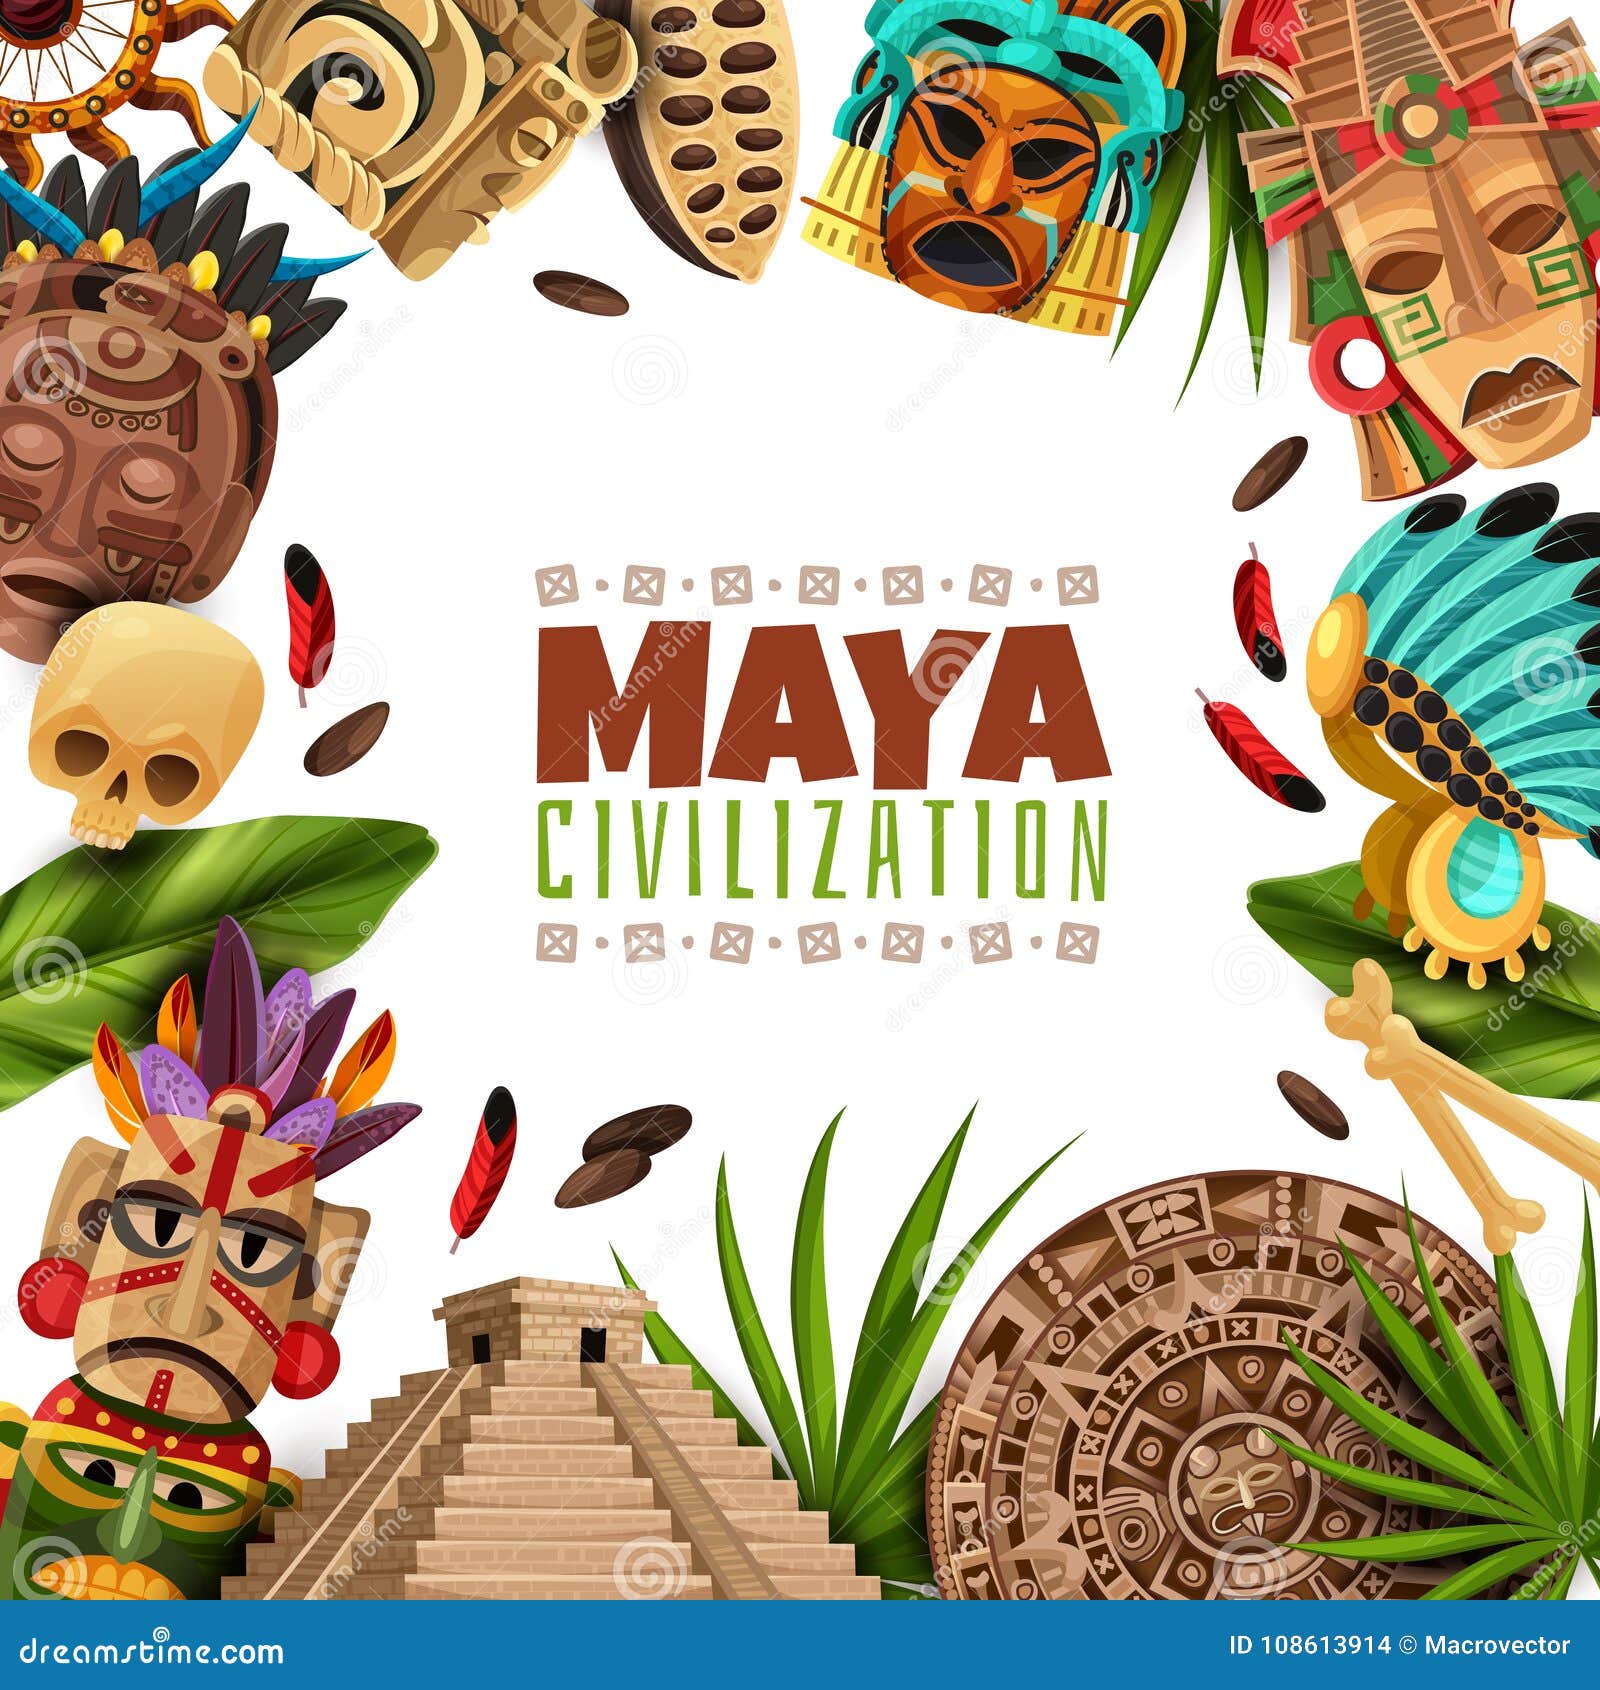 maya civilization cartoon frame